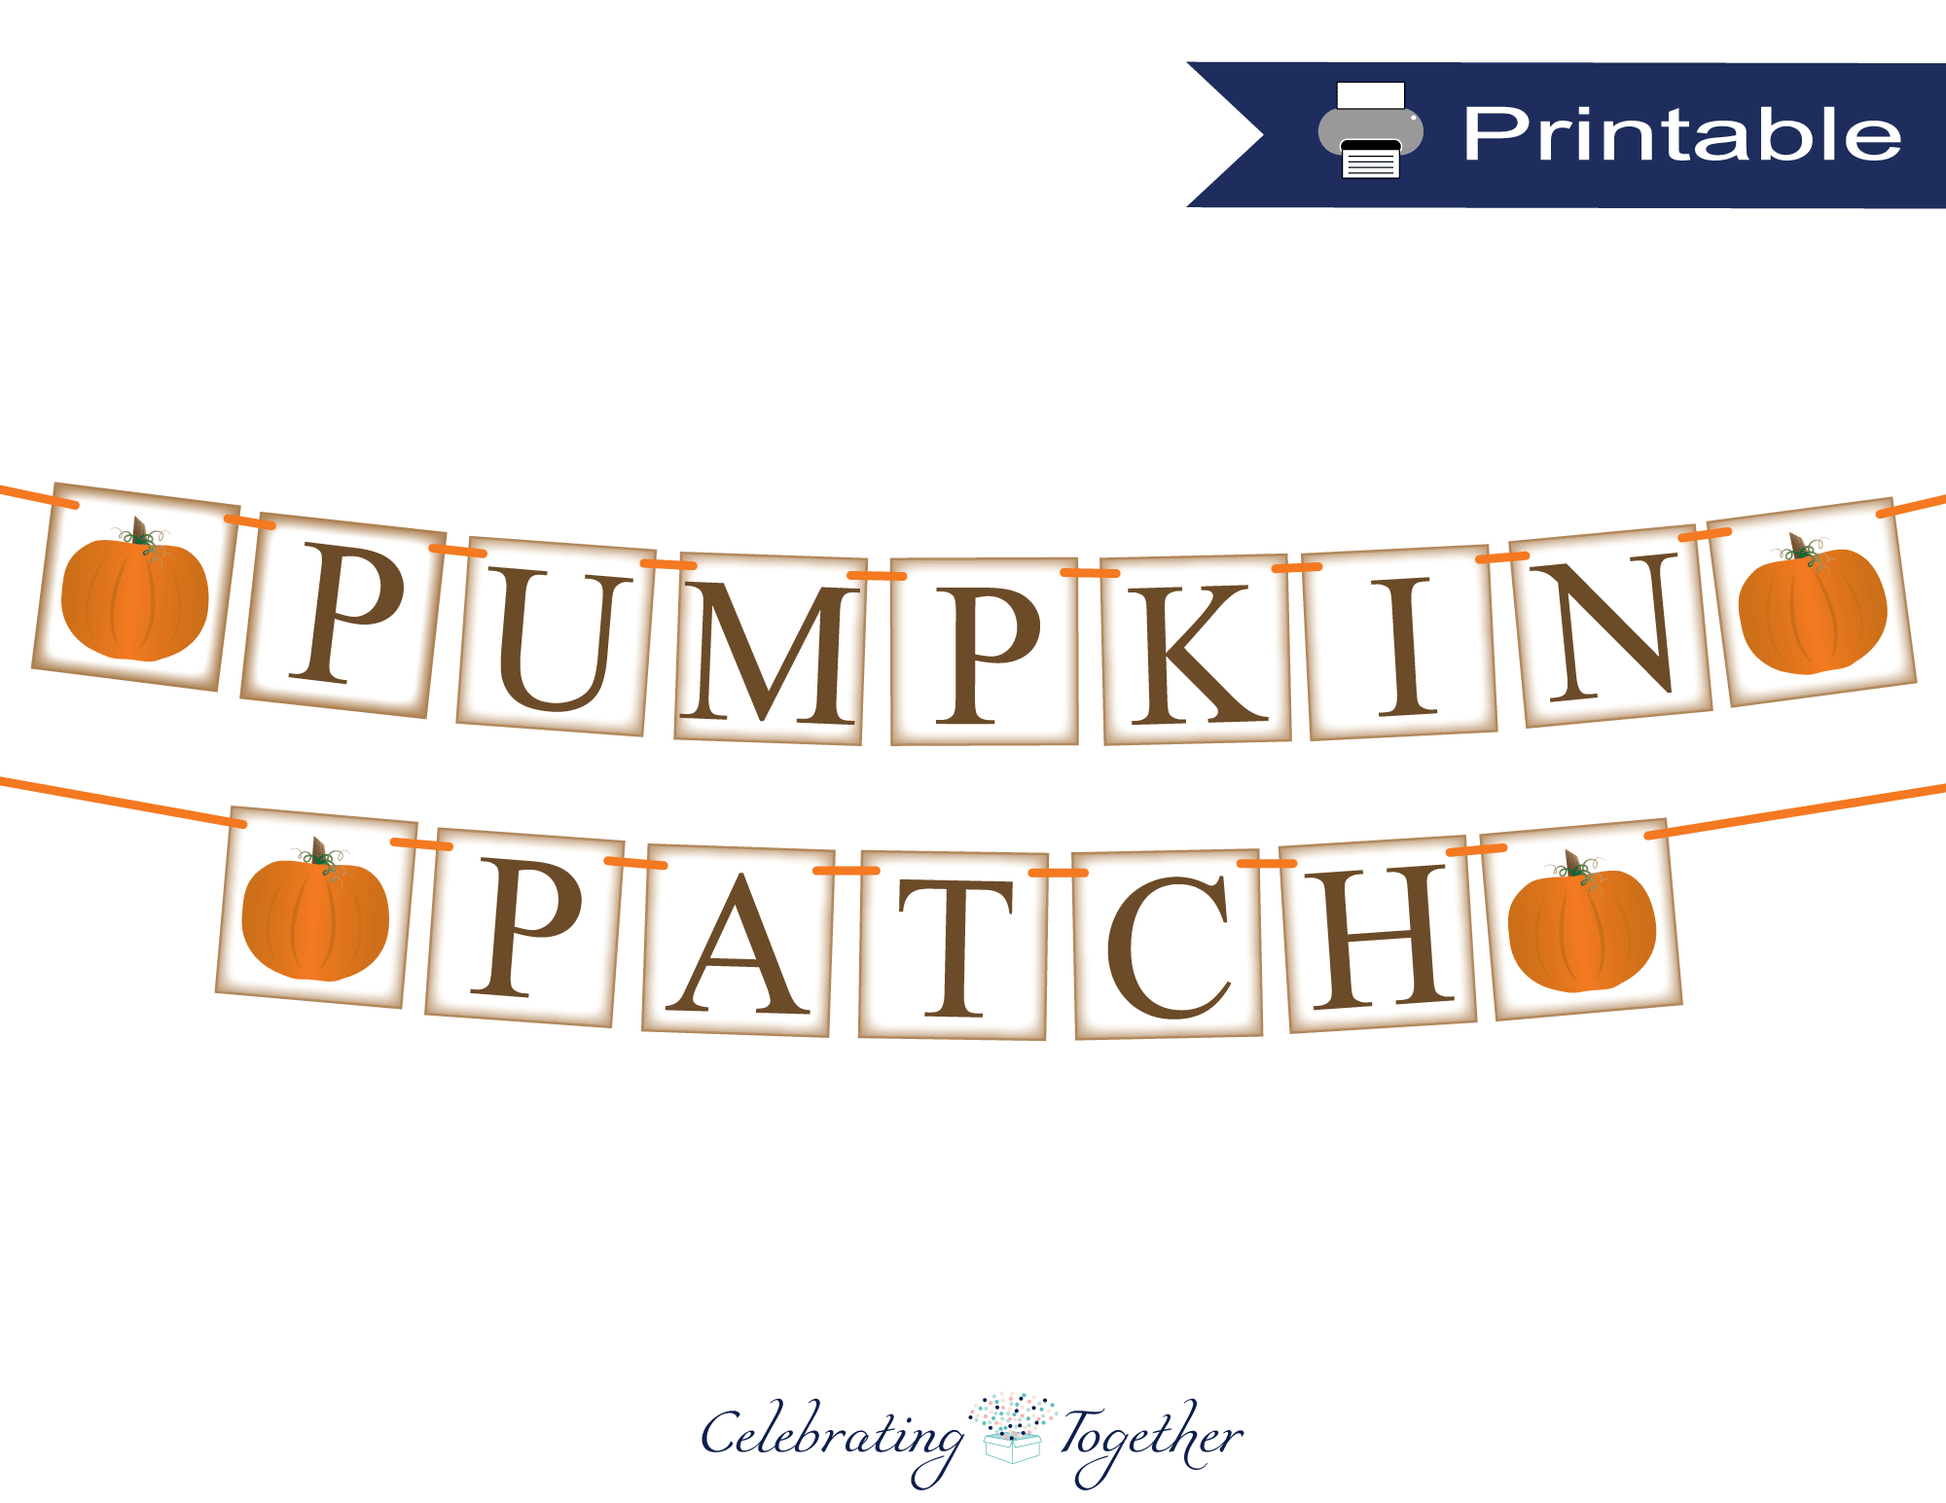 Printable rustic pumpkin patch banner - Celebrating Together